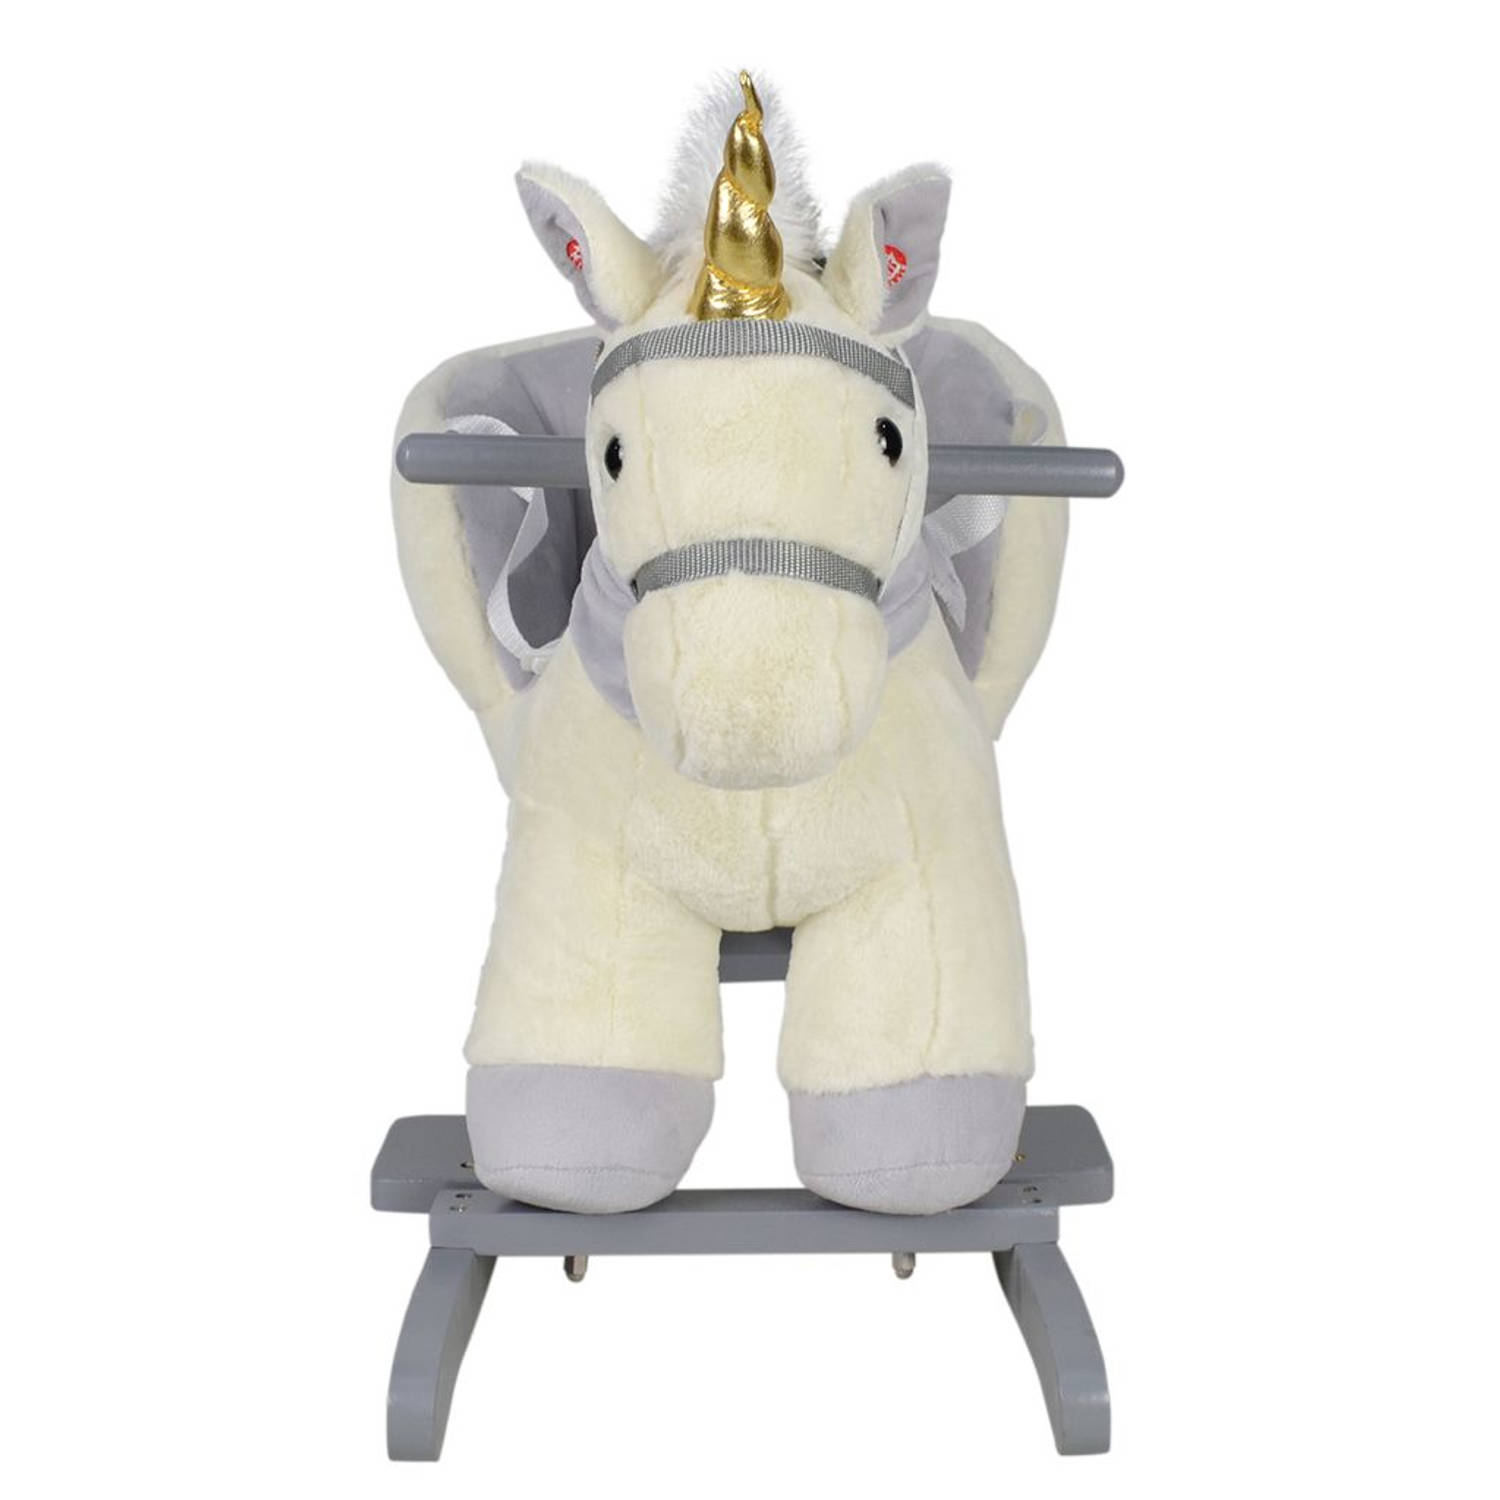 Infantastic - Hobbelpaard voor Baby en Kind - Schommelpaard Silver Unicorn - Stevige Constructie - Knuffelzacht met Geluidseffecten - Eenhoorn Grijs